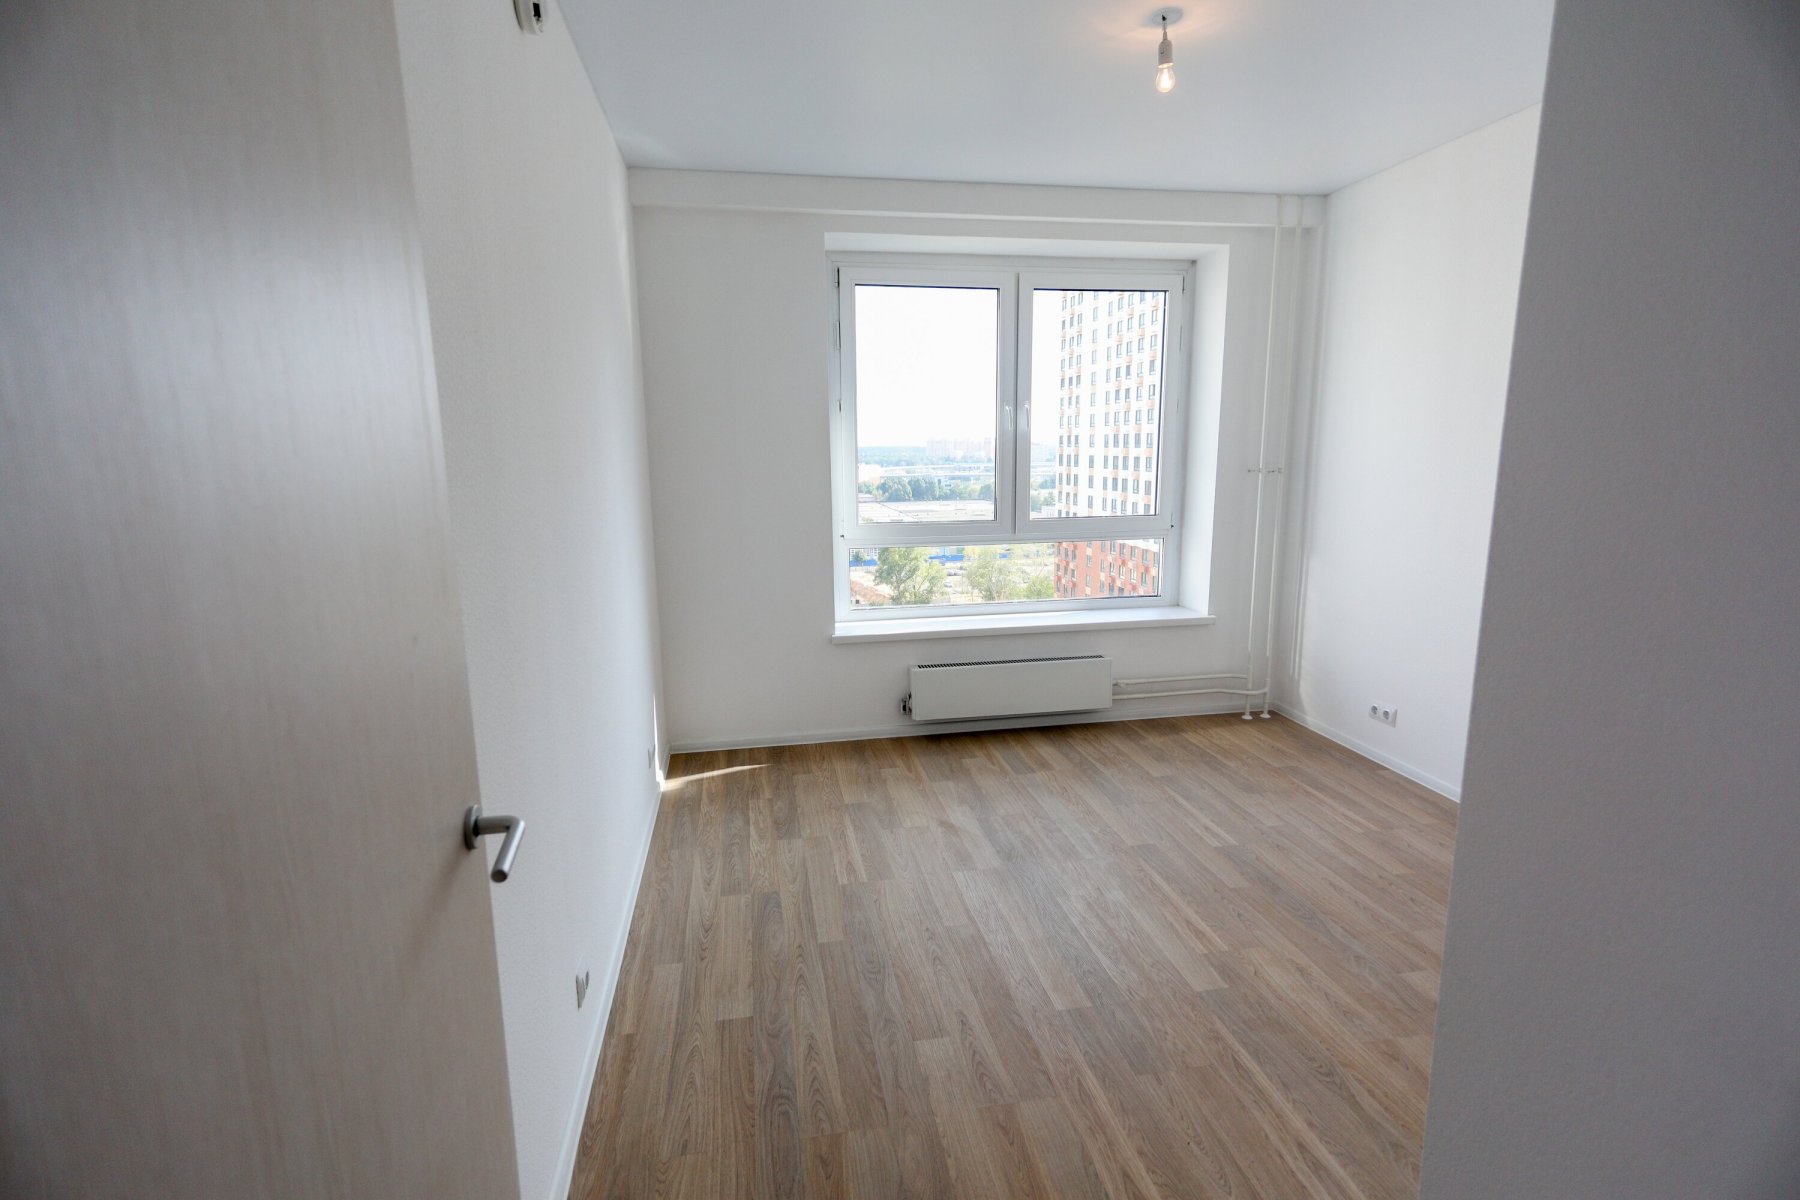 Средняя цена квартир-студий в Москве составляет 7,6 млн рублей